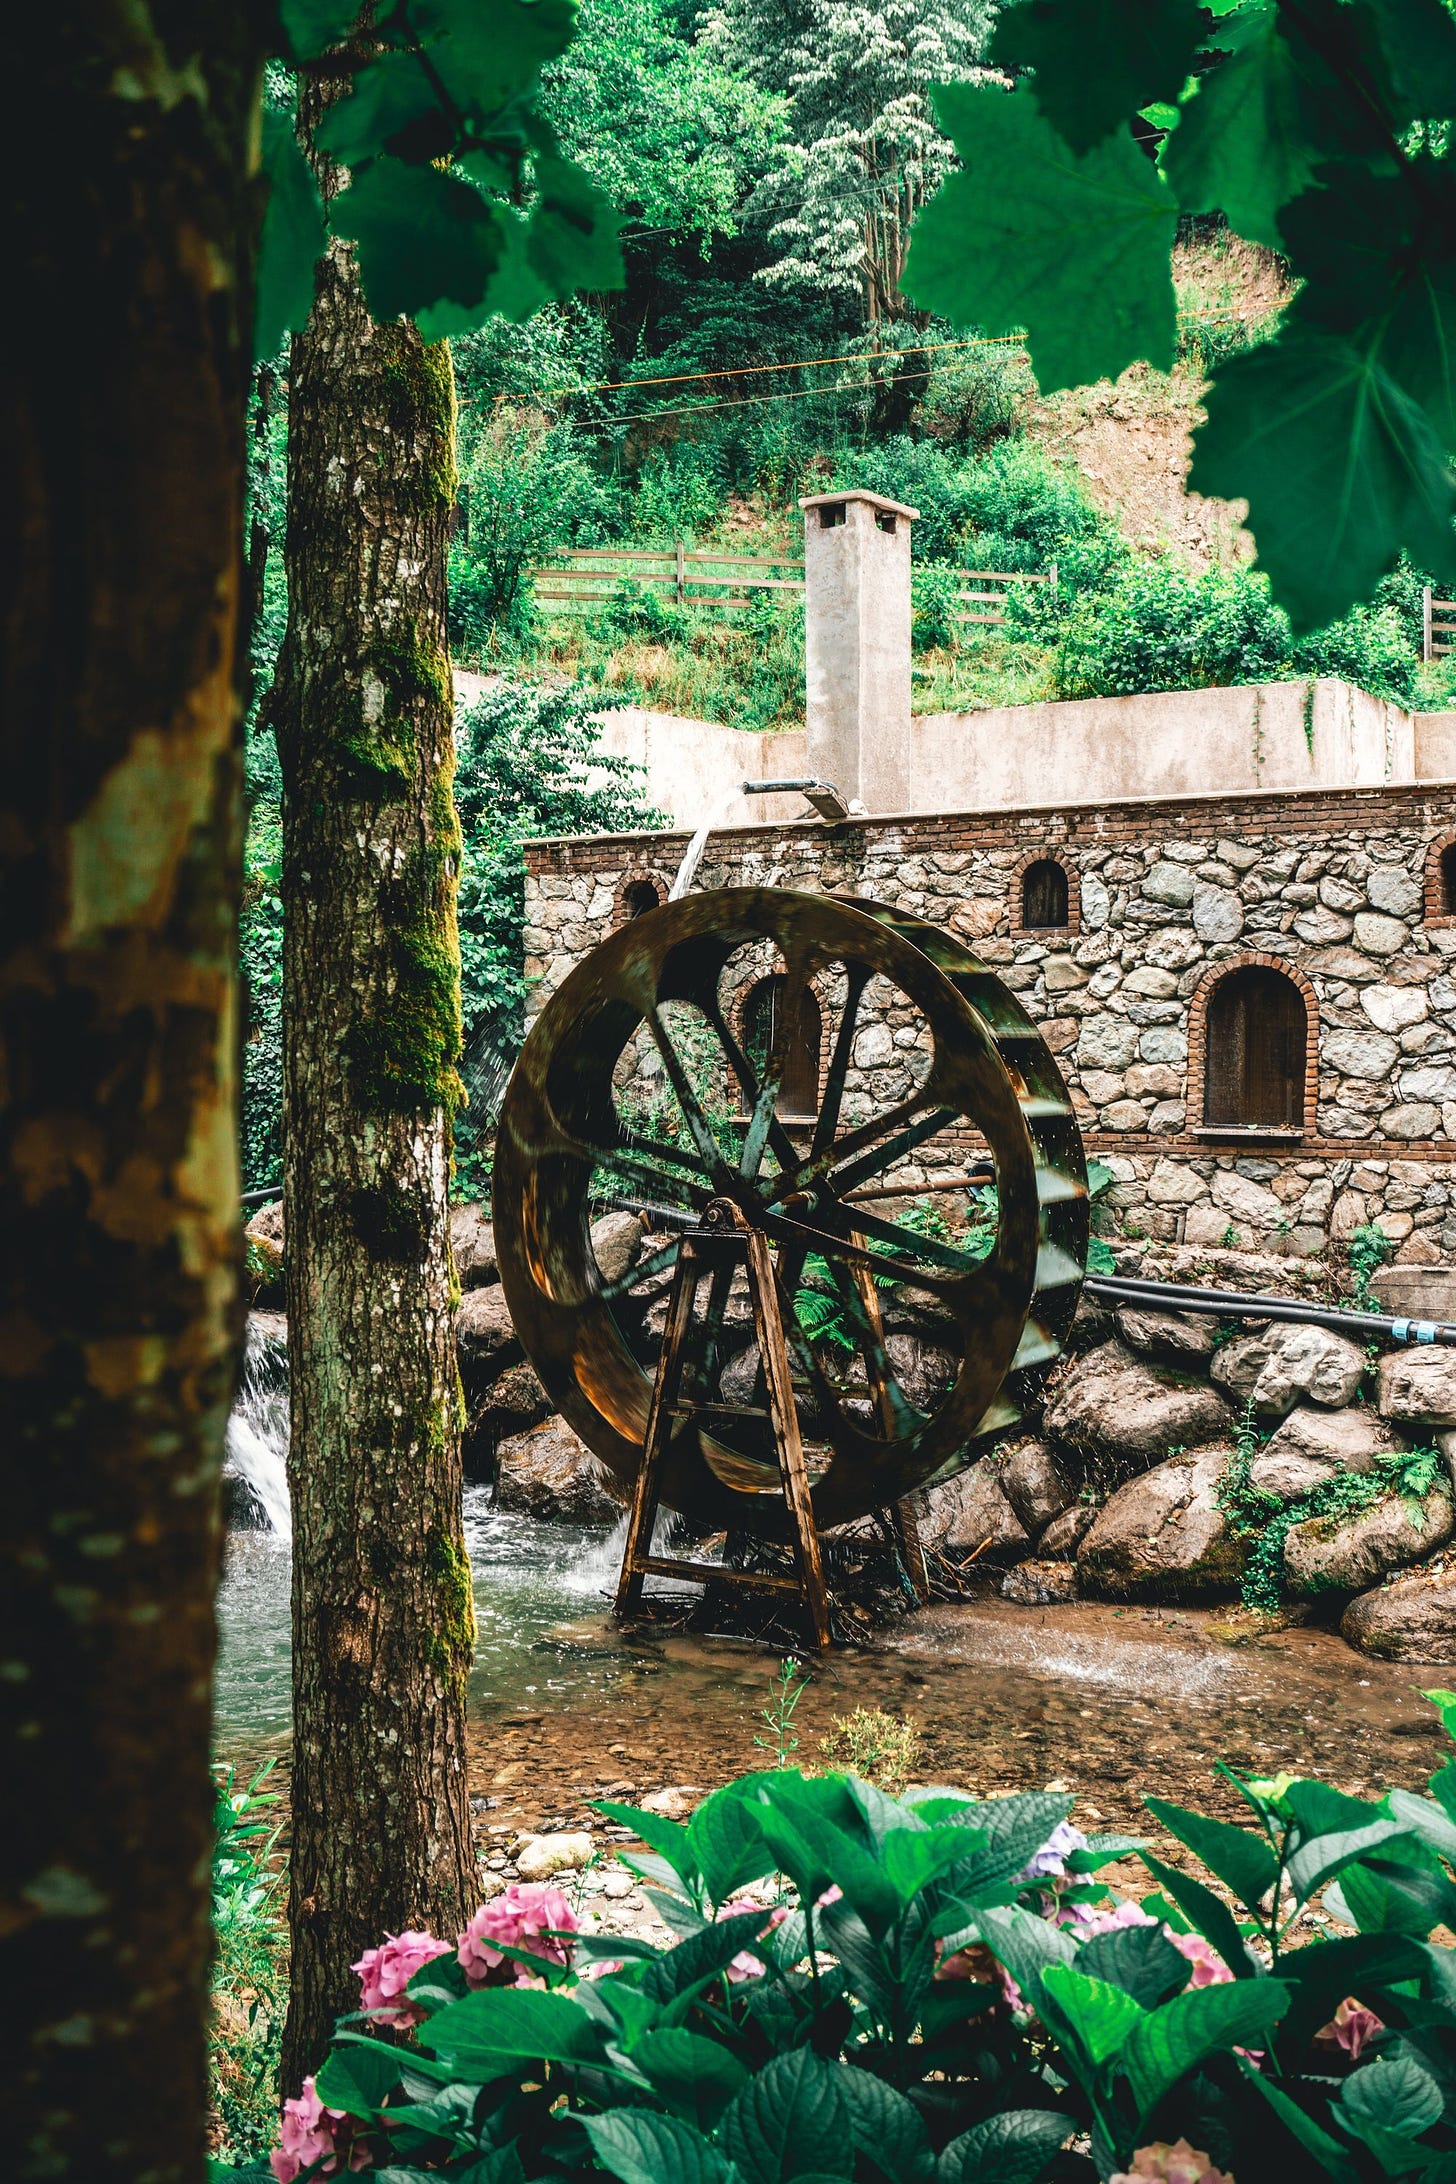 Photo of waterwheel by Ali Arapoğlu from Pexels